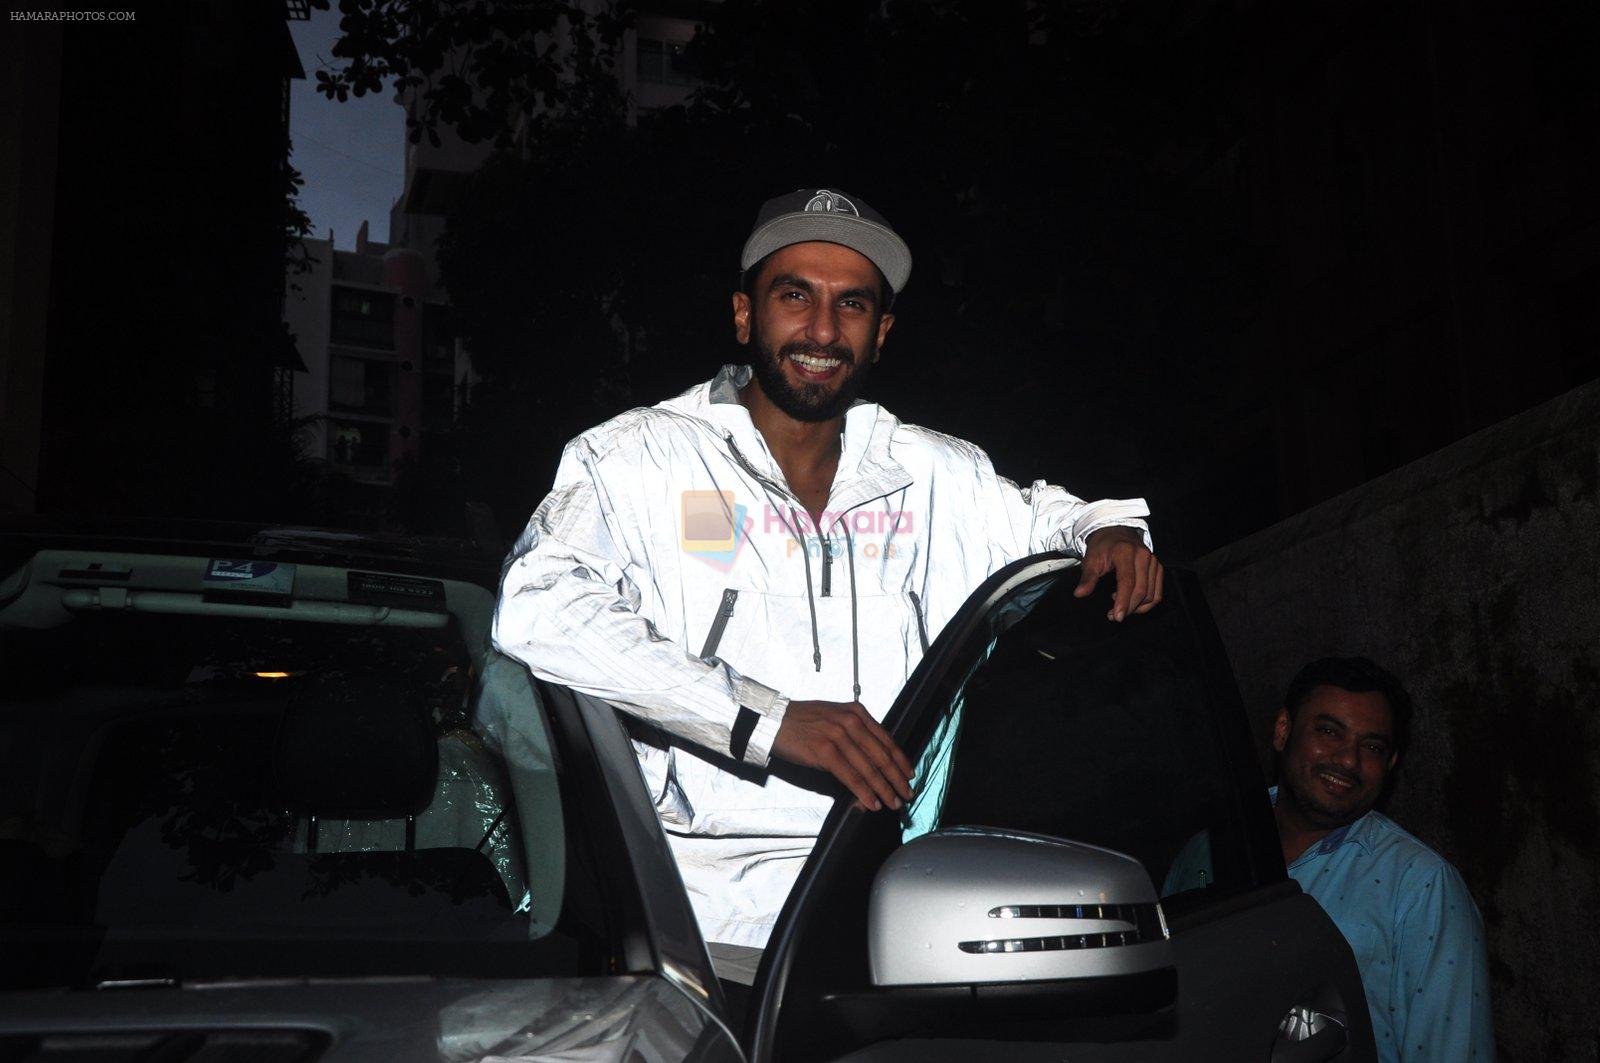 Ranveer Singh snapped in anti-pap jacket on 2nd Aug 2016